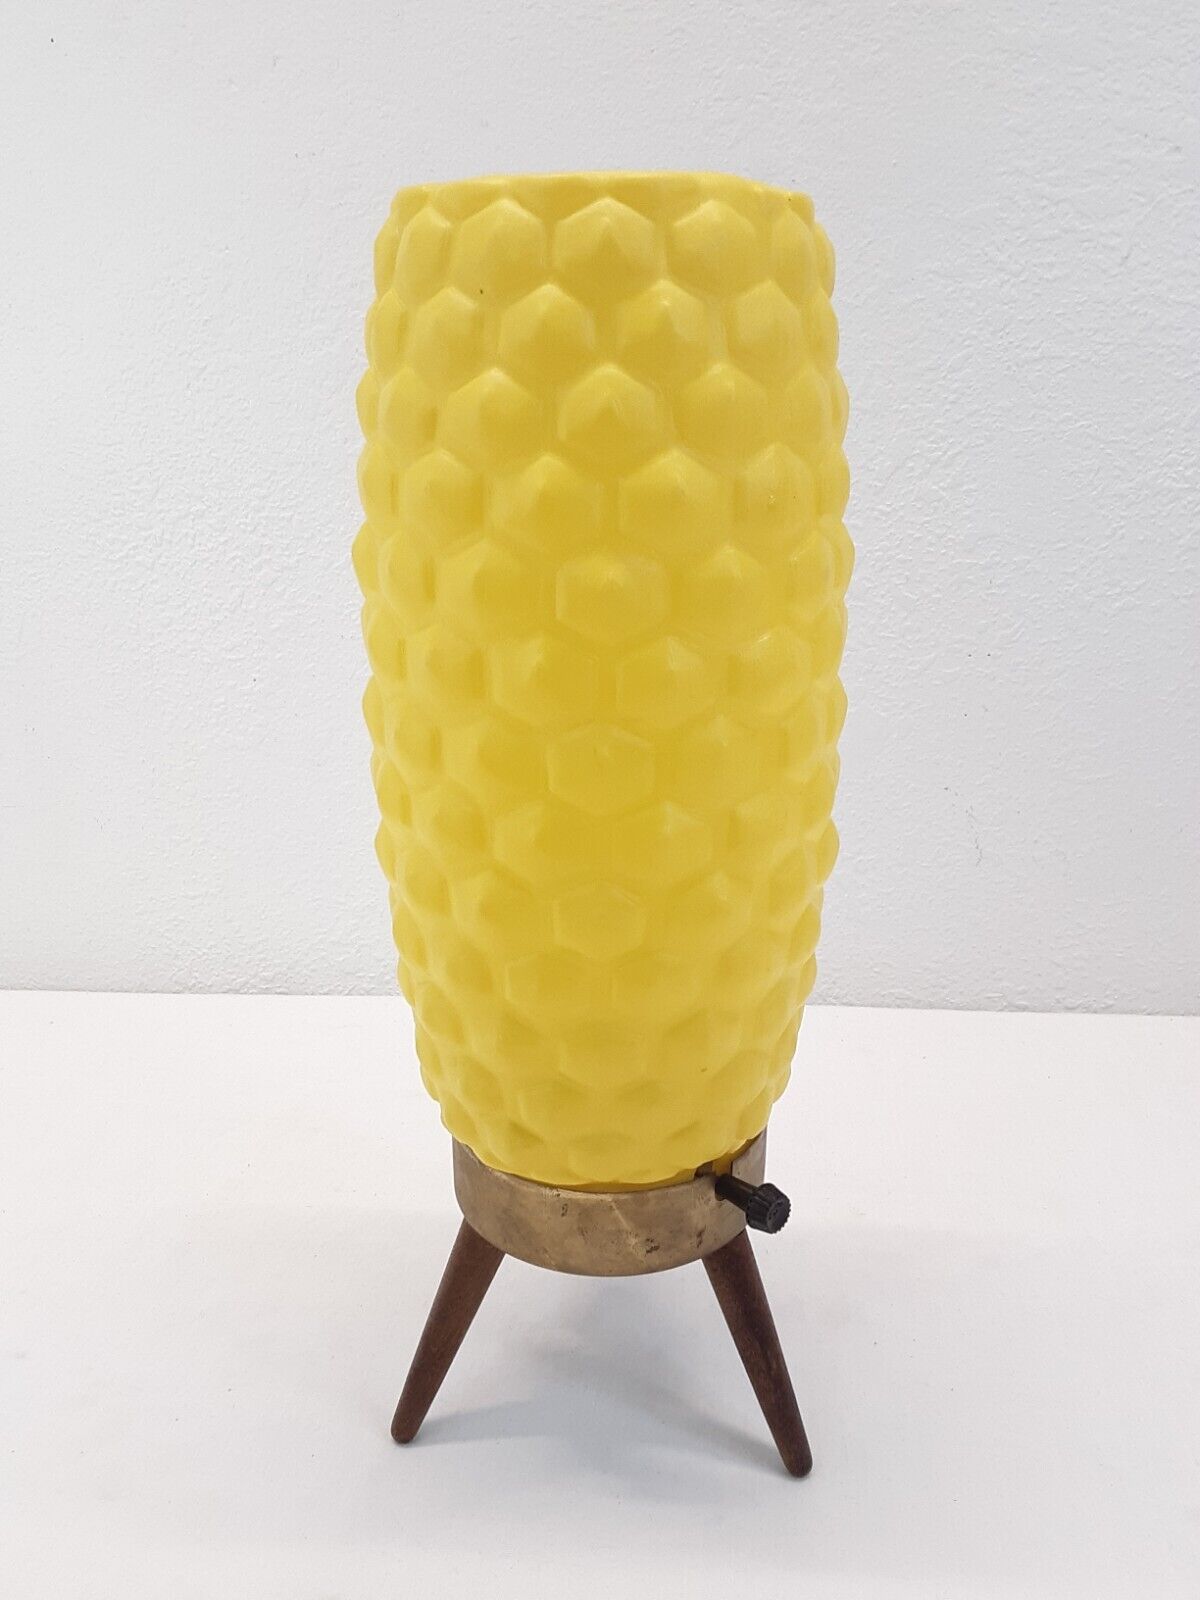 VTG MCM Atomic Honeycomb Beehive Yellow Plastic Tripod Leg Table TV Bubble Lamp